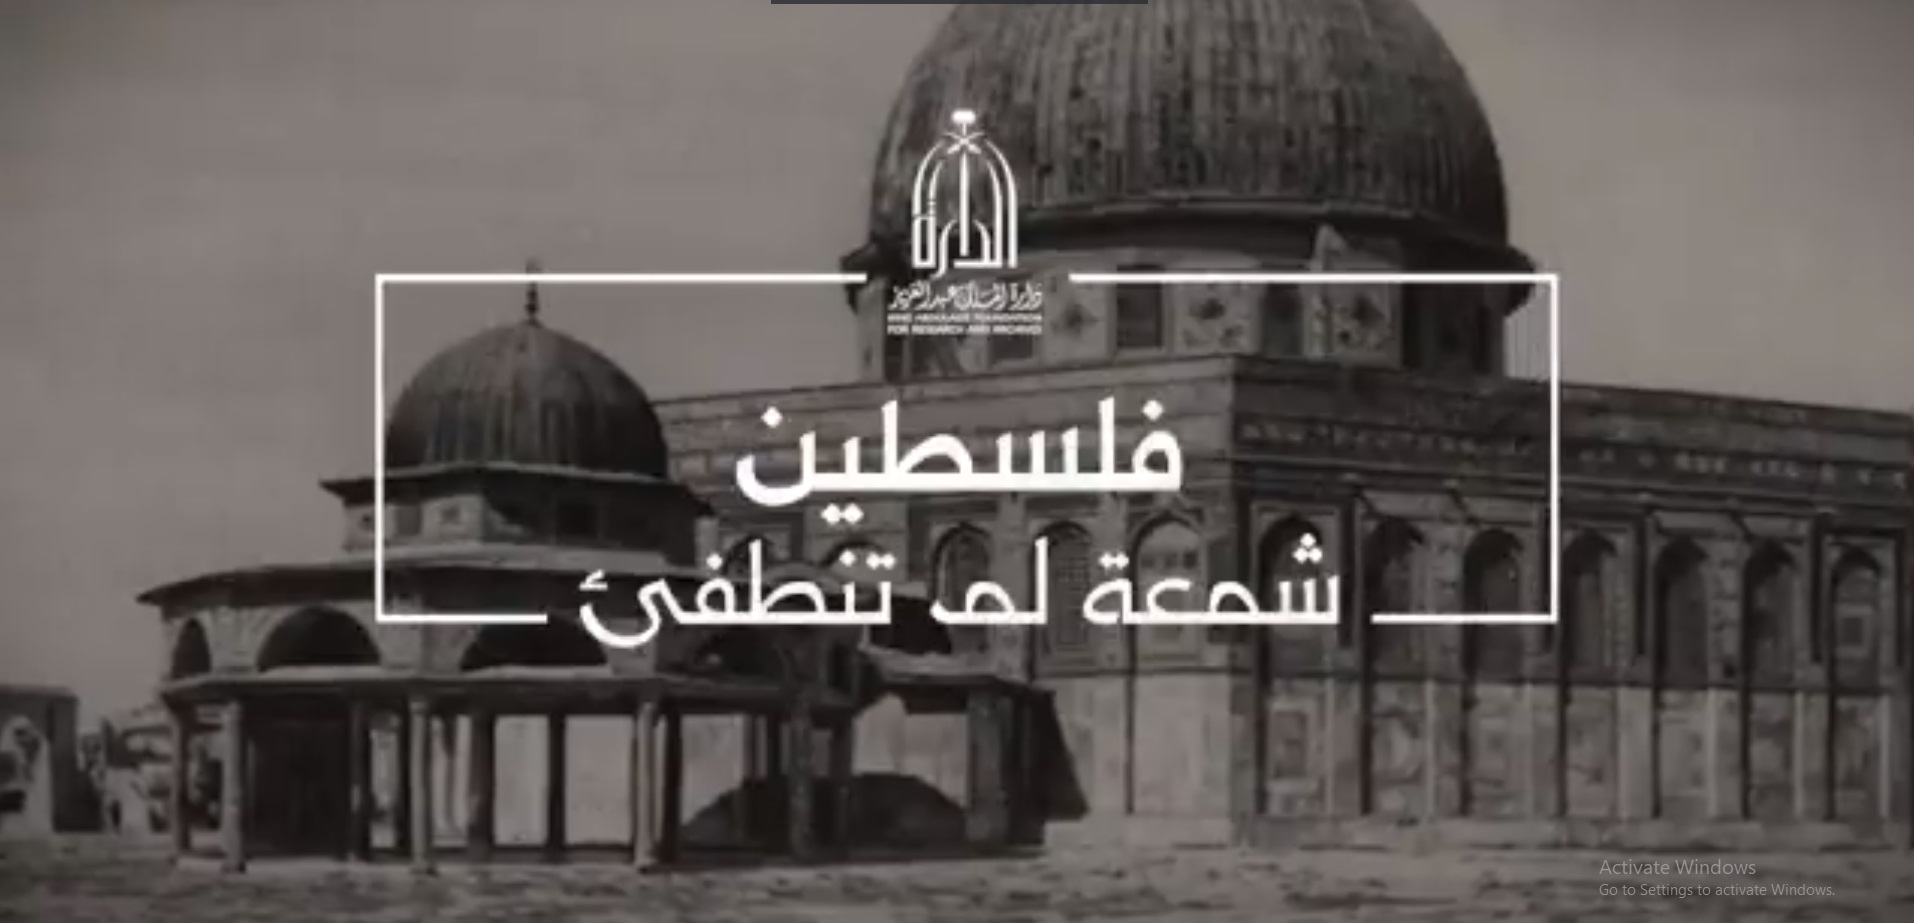 دارة الملك عبدالعزيز توثق جهود السعودية في فلسطين بوثائقي